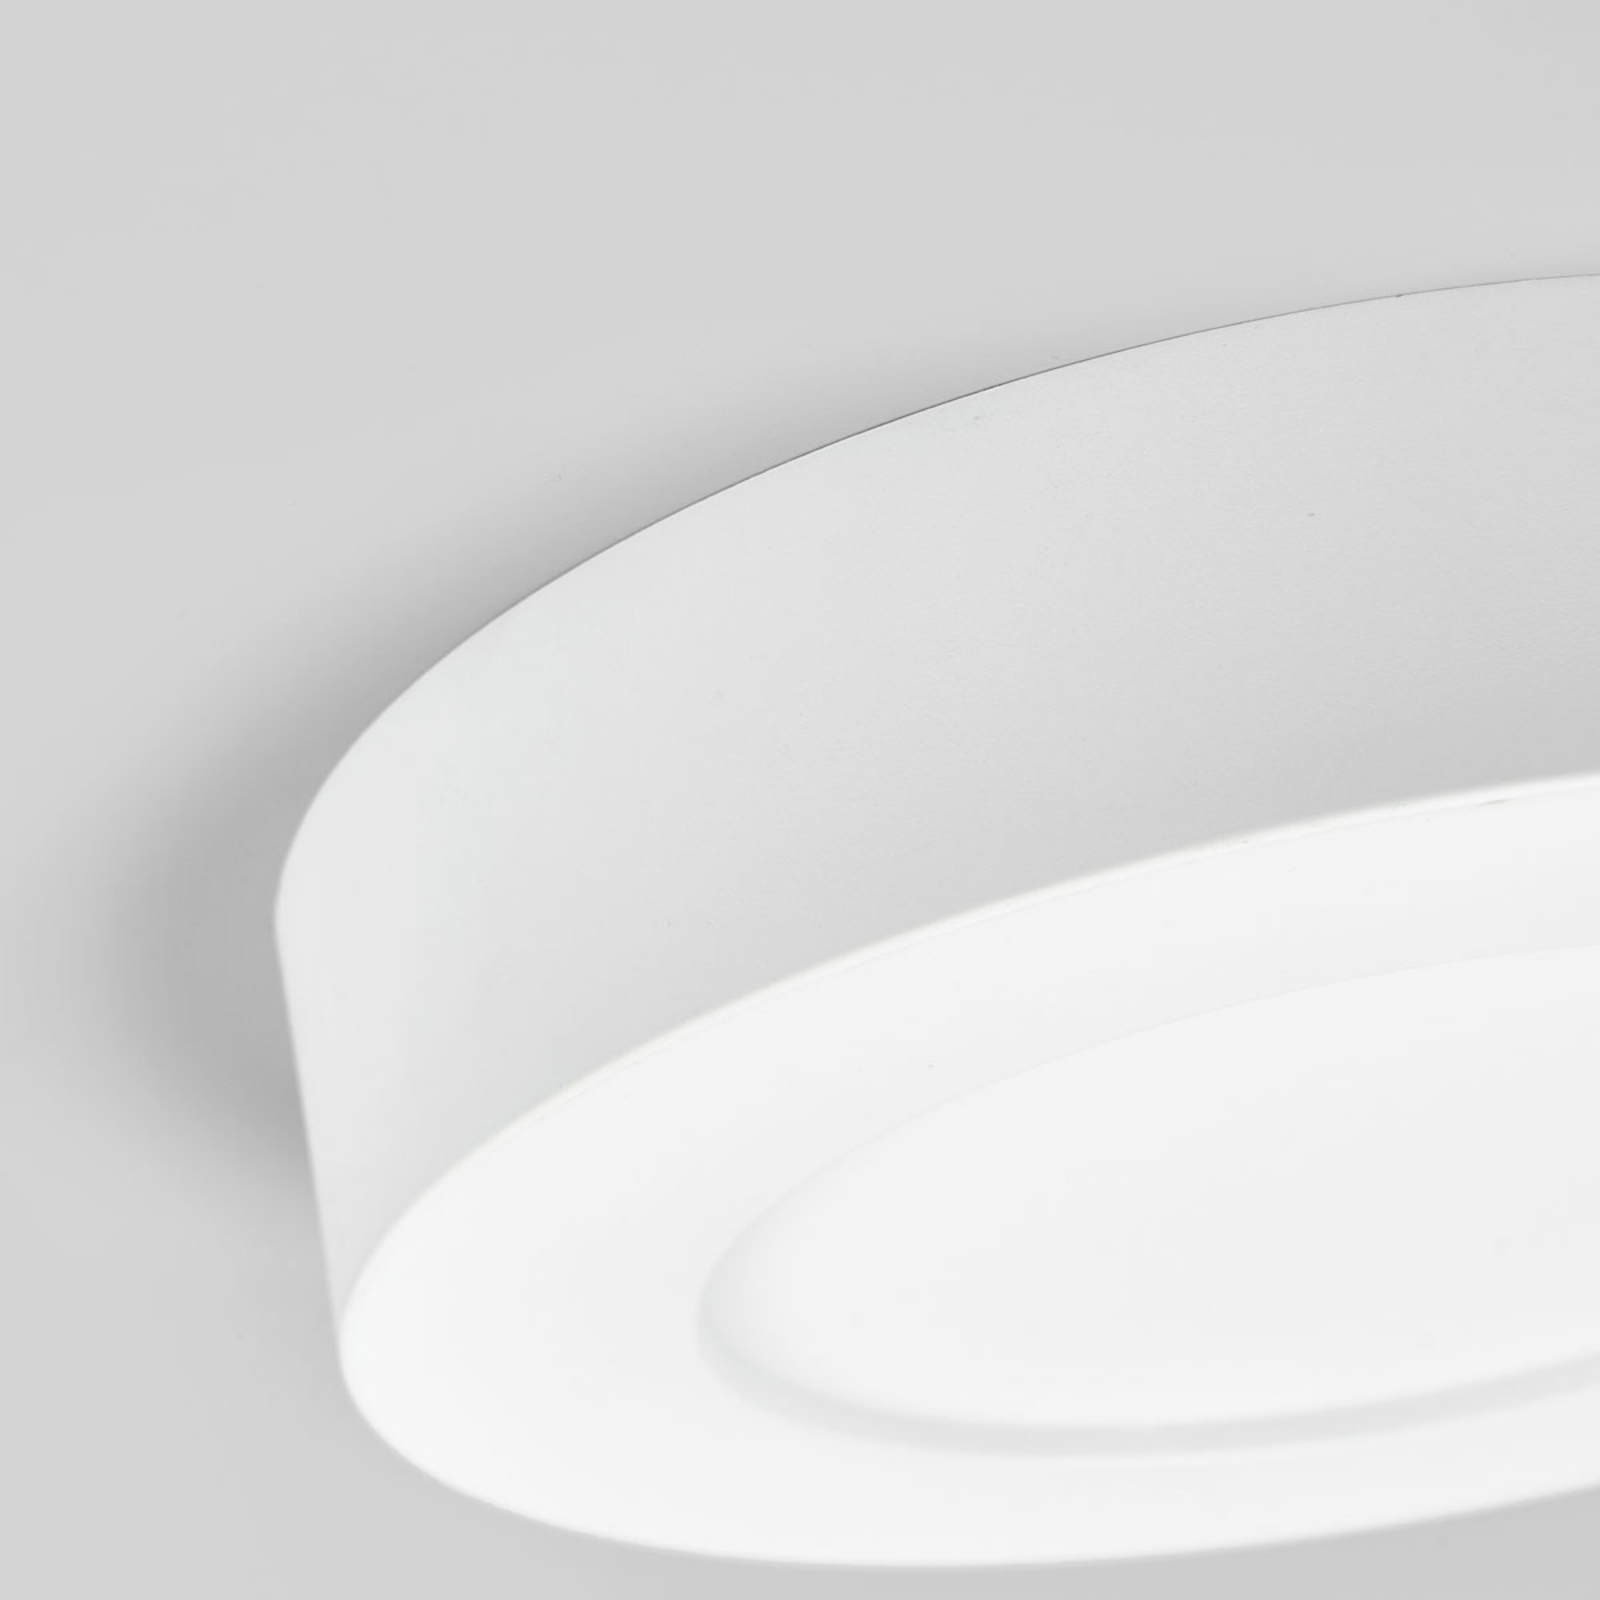 LED-Deckenlampe Marlo Schlicht Eckig Hell Weiß 16W Universalweiß Lampenwelt IP44 